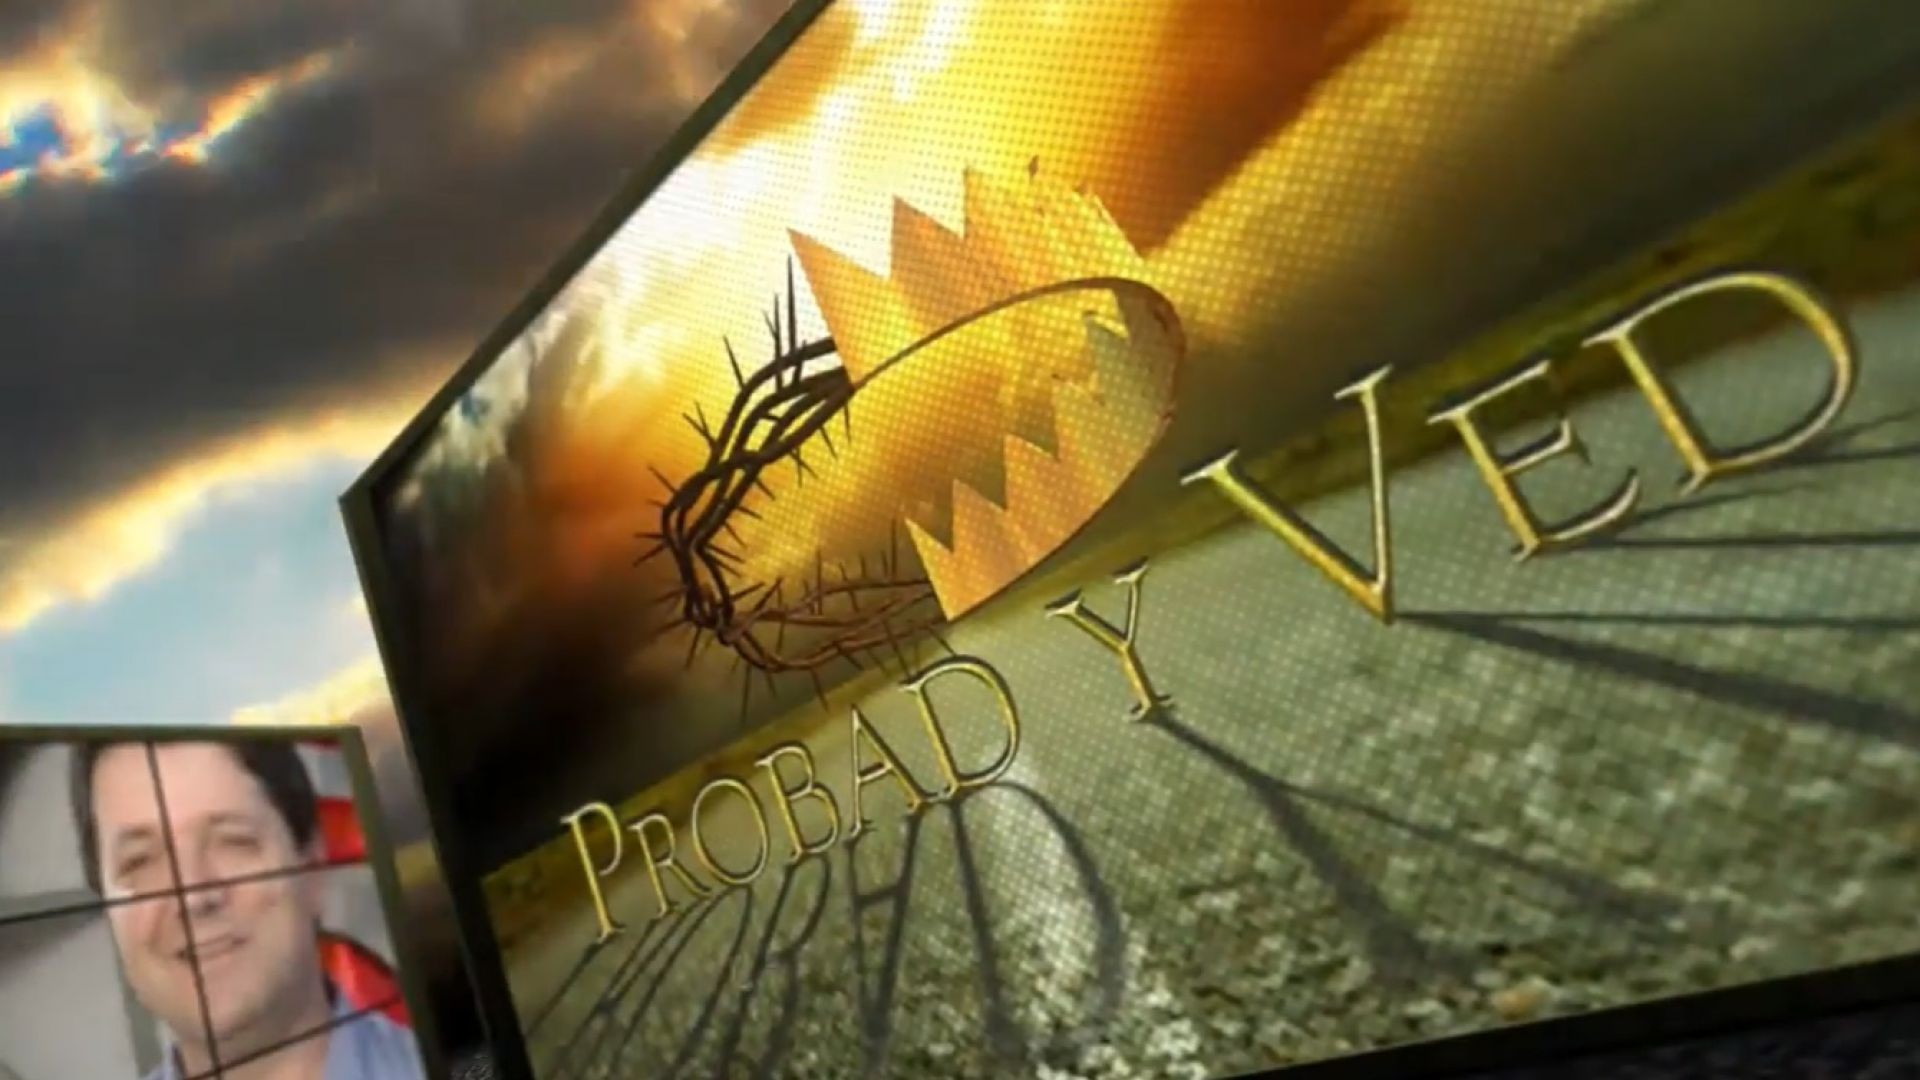 Probad y Ved 2012 - Un ejemplo de mision